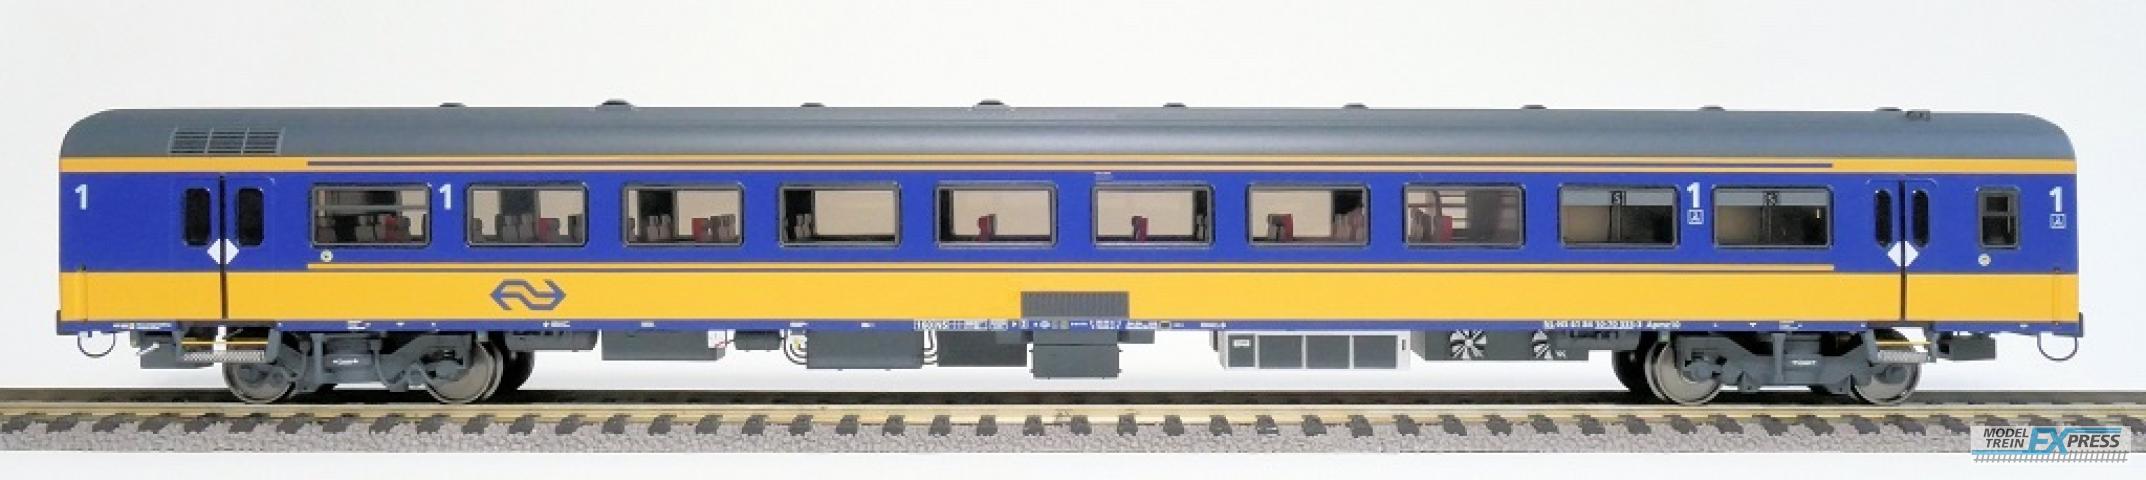 Exact-train 11008 NS ICRm Amsterdam - Rotterdam für den Inlandseinsatz Reisezugwagen Apmz10 (Farbe Gelb / Blau), Ep. VI